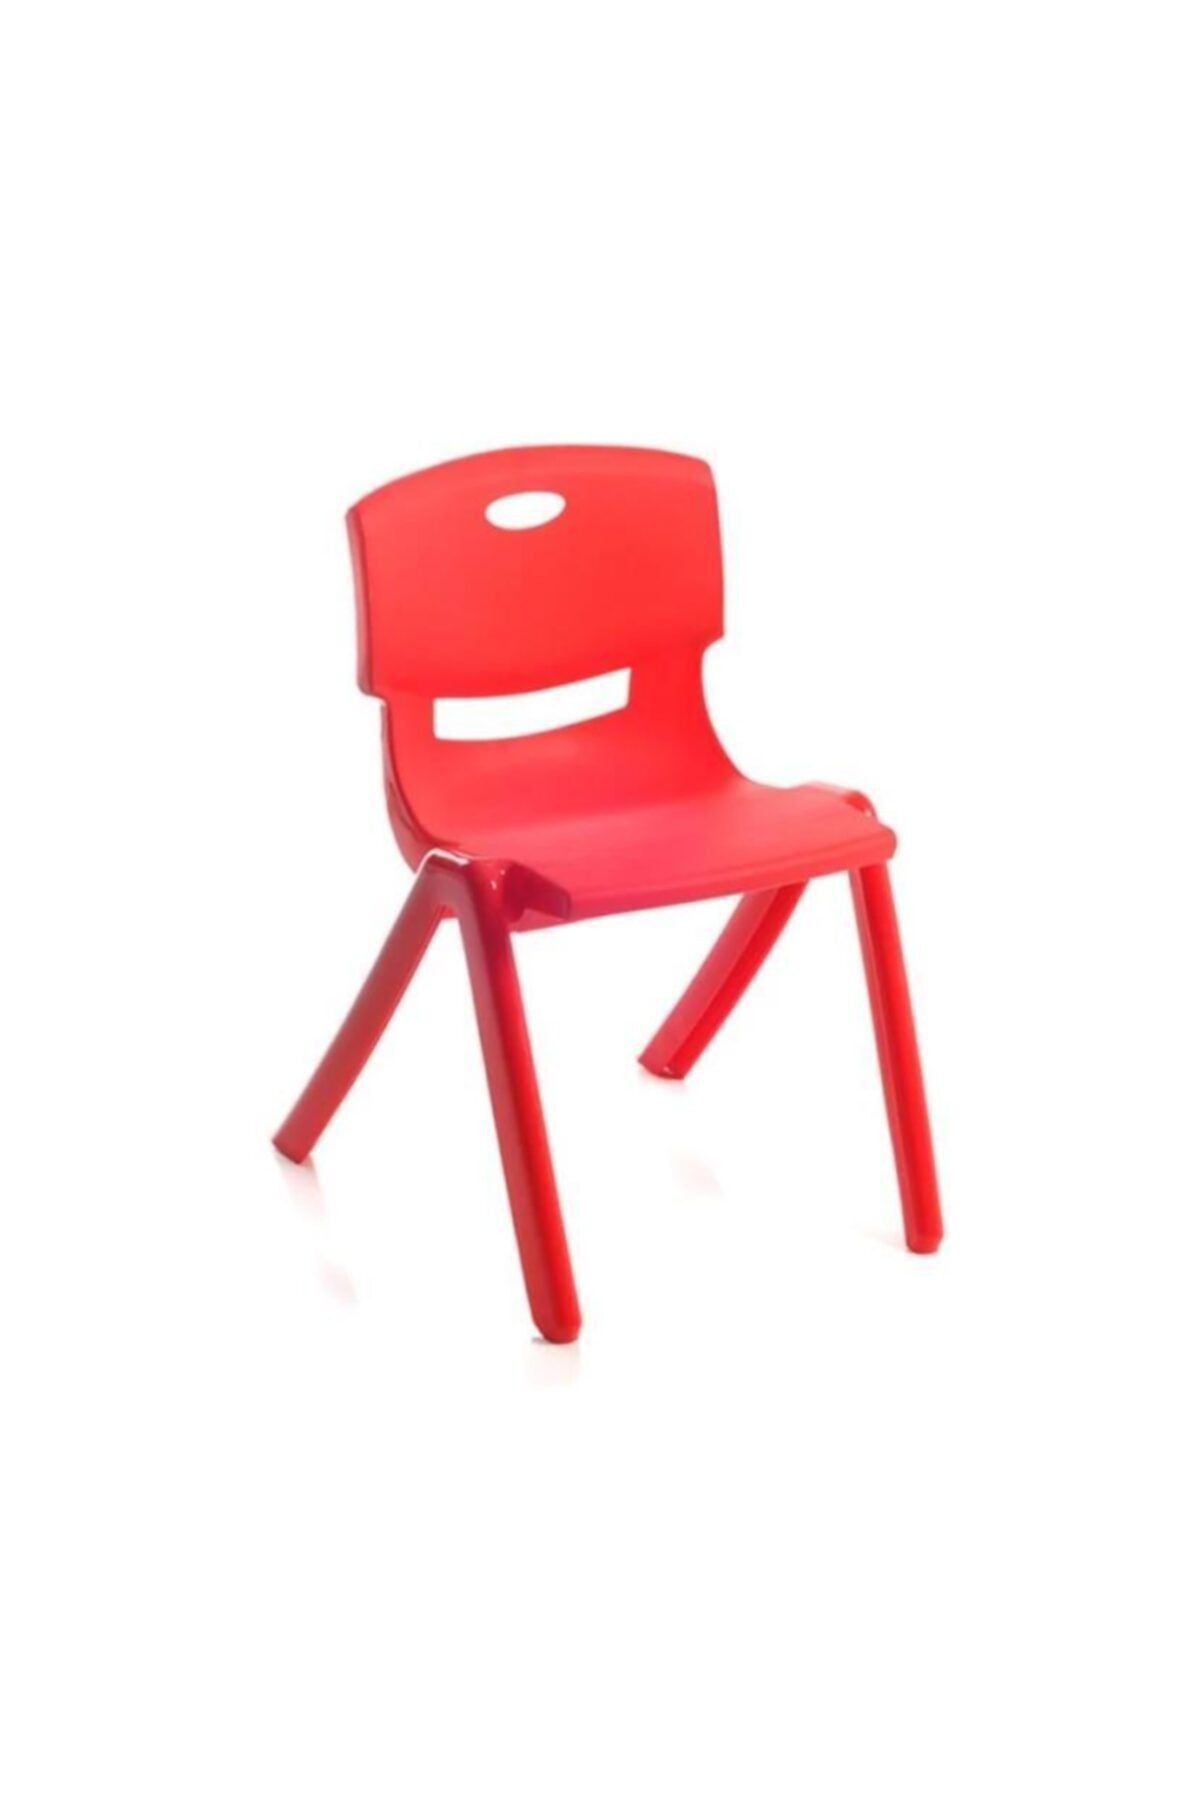 abnturk 2 Adet Sağlam Çocuk Sandalyesi Arkalıklı Kreş Ve Anaokulu Sandalyesi 35c